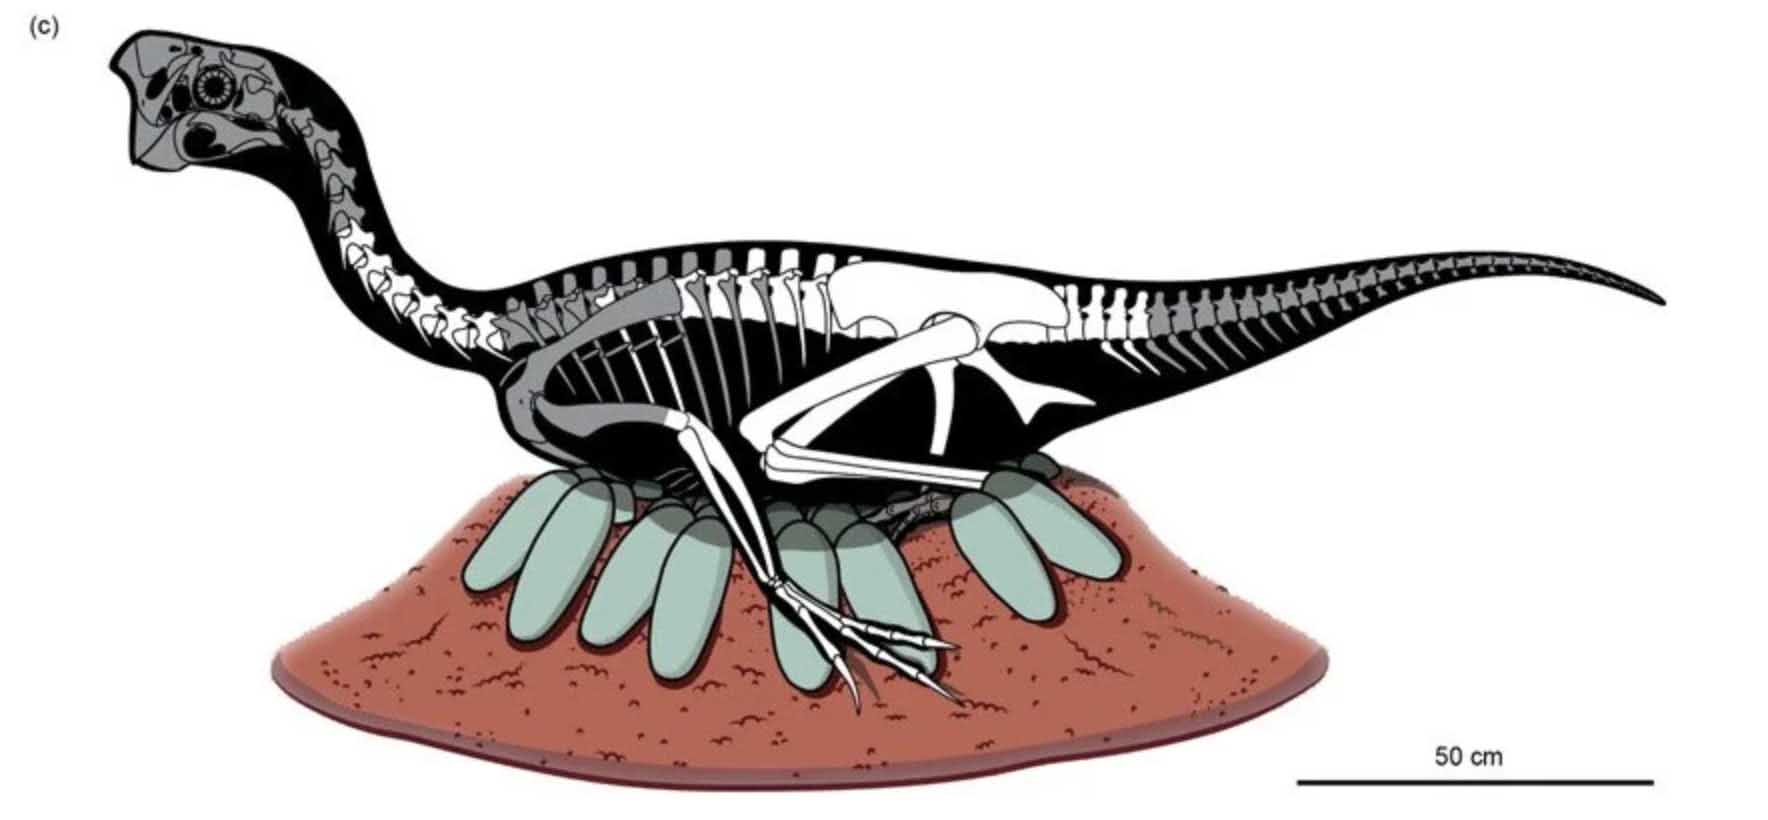 Otroligt bevarat dinosaurieembryo hittat inuti fossiliserat ägg 3